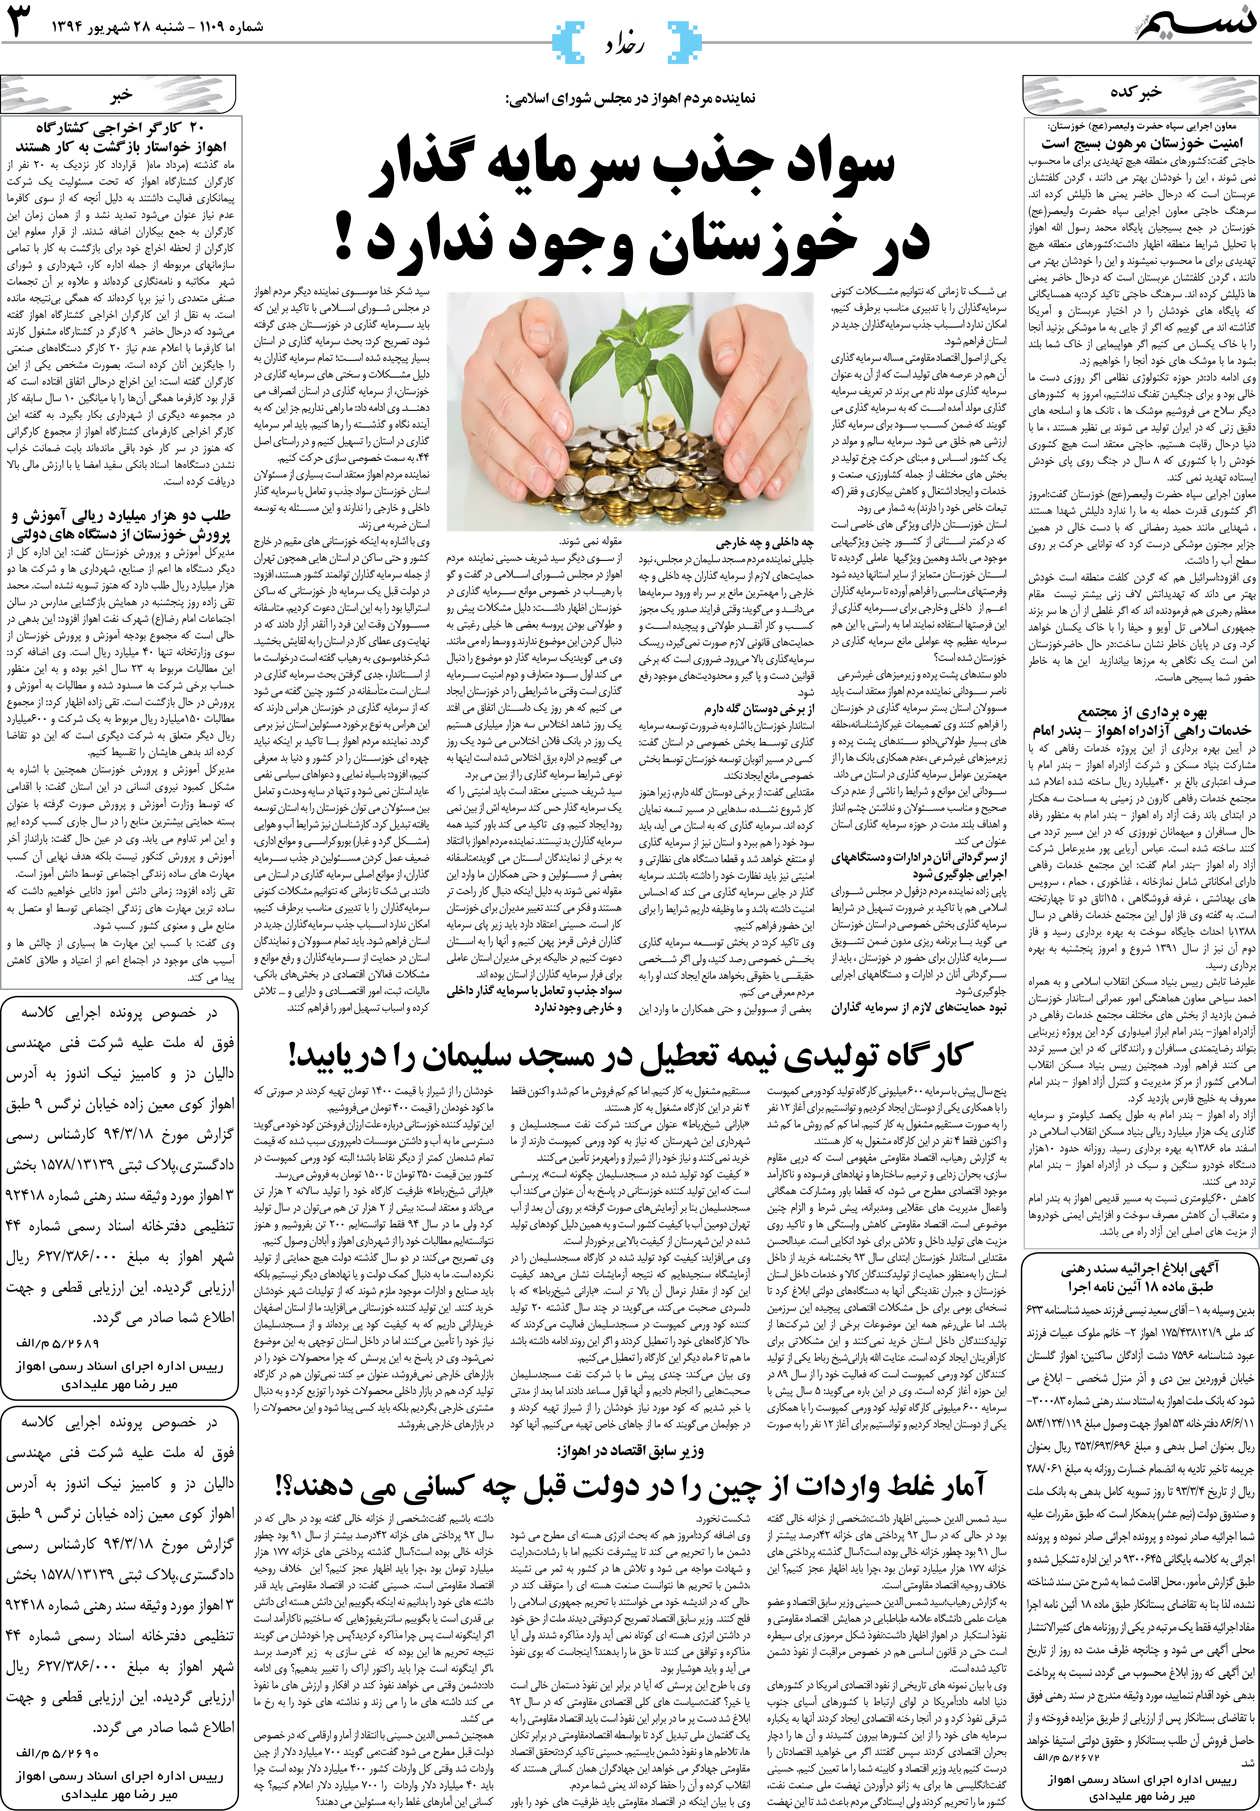 صفحه رخداد روزنامه نسیم شماره 1109